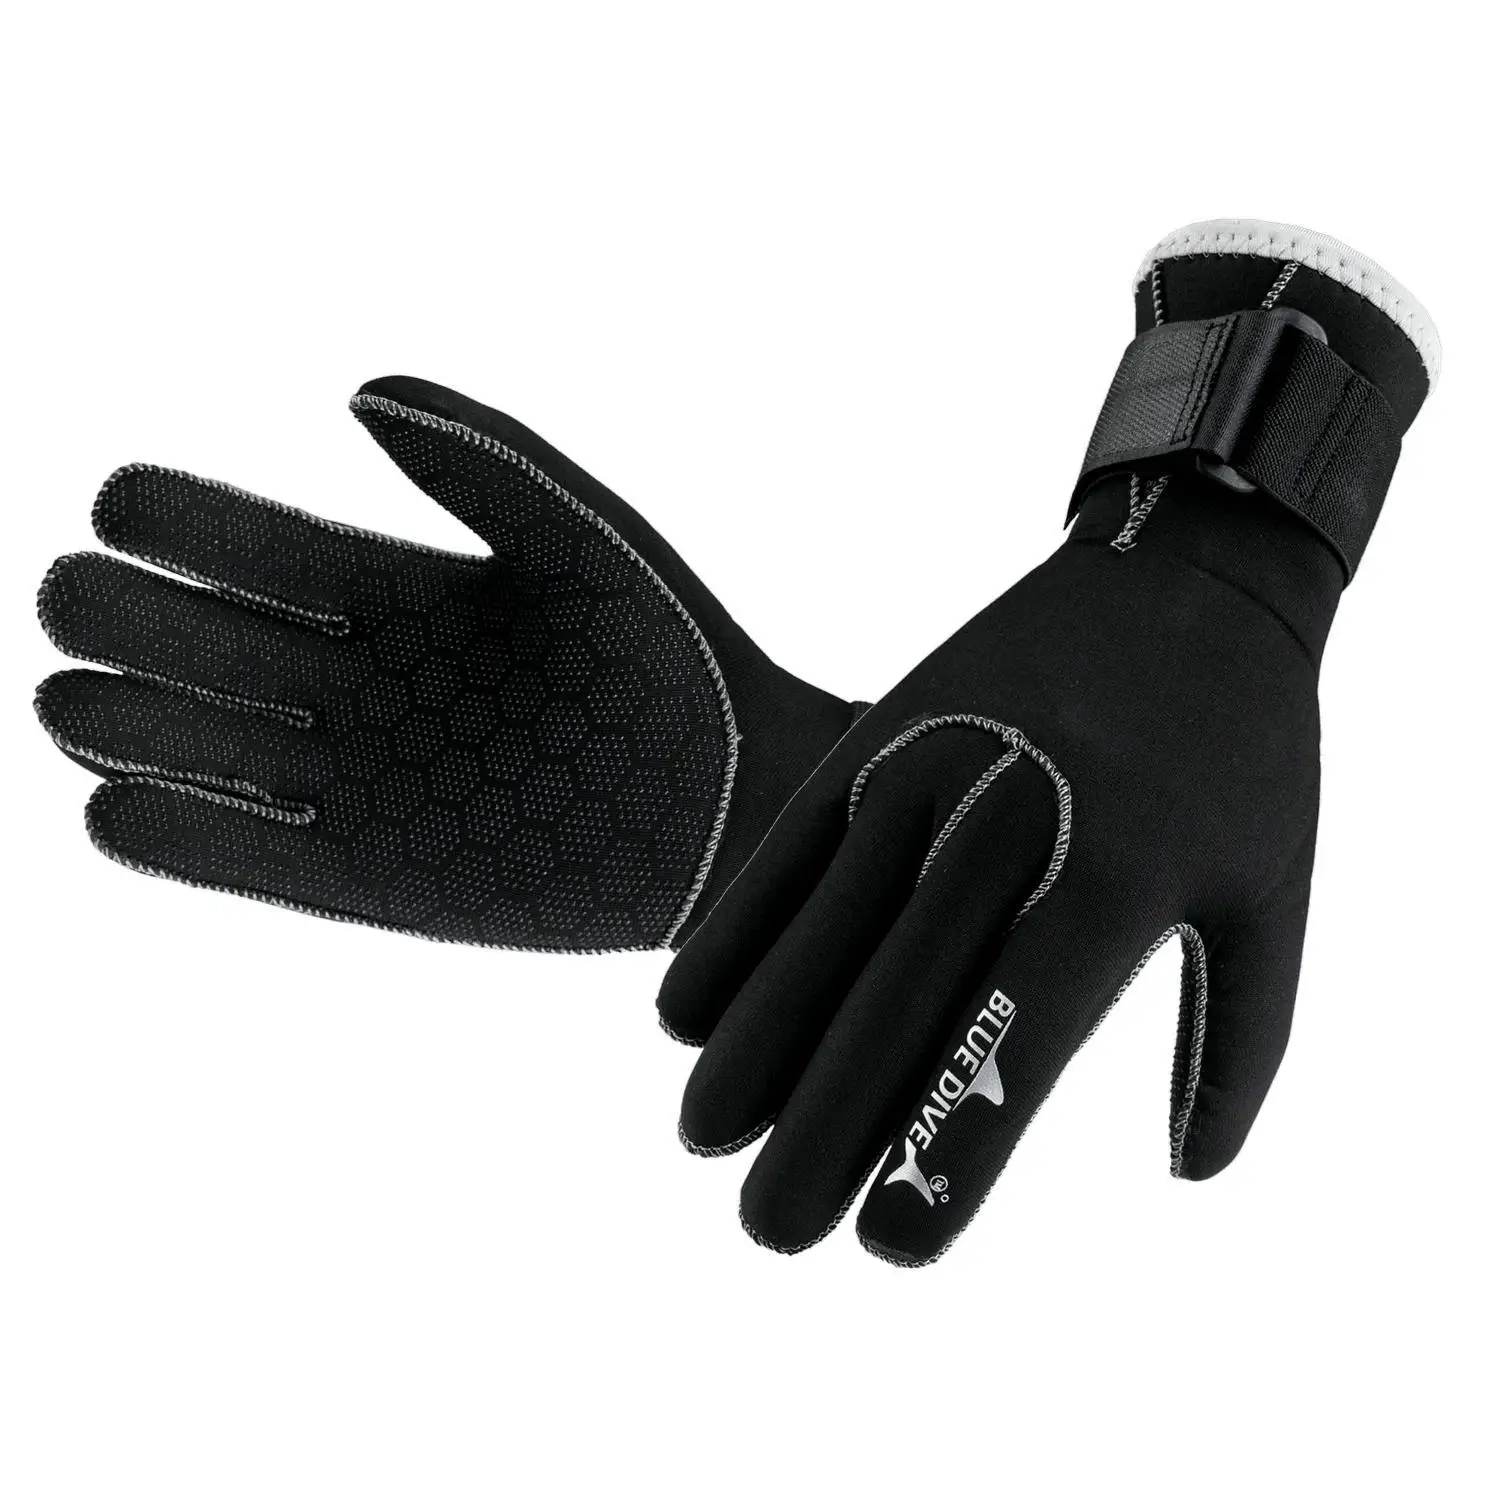 3 мм Утолщенные перчатки для подводного плавания с глубоким покрытием, водонепроницаемые, теплые, износостойкие, против царапин, Профессиональные перчатки для серфинга и дайвинга, против порезов 1